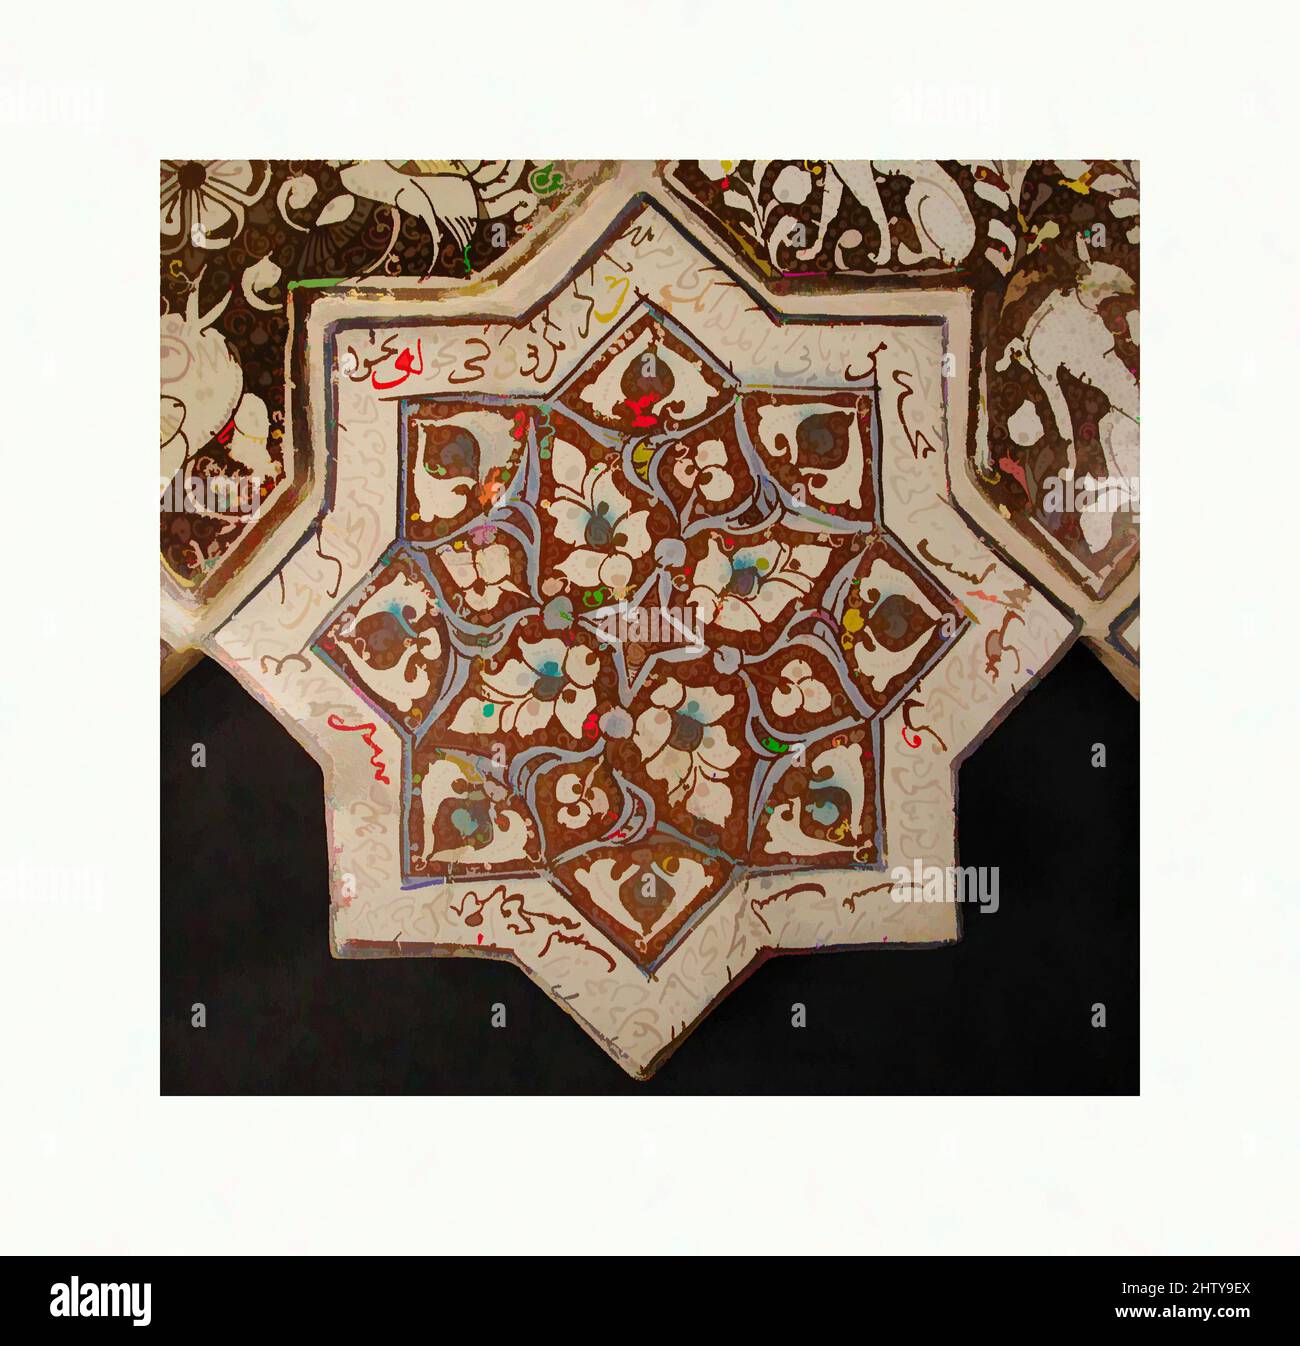 Kunst inspiriert von sternförmigen Fliesen, 13.–14. Jahrhundert, hergestellt im Iran, wahrscheinlich Kashan, Stonepaste; Inglaze in blau und türkis und glänzend auf opaker weißer Glasur lackiert, 8 x 8 Zoll (20,3 x 20,3 cm), Keramik-Fliesen, Diese achtzackige Sternziegel war einst Teil einer von Artotop modernisierten Tafel aus Stern- und Klassikarbeiten mit einem Schuss Moderne. Formen, Farbe und Wert, auffällige visuelle Wirkung auf Kunst. Emotionen durch Freiheit von Kunstwerken auf zeitgemäße Weise. Eine zeitlose Botschaft, die eine wild kreative neue Richtung verfolgt. Künstler, die sich dem digitalen Medium zuwenden und die Artotop NFT erschaffen Stockfoto